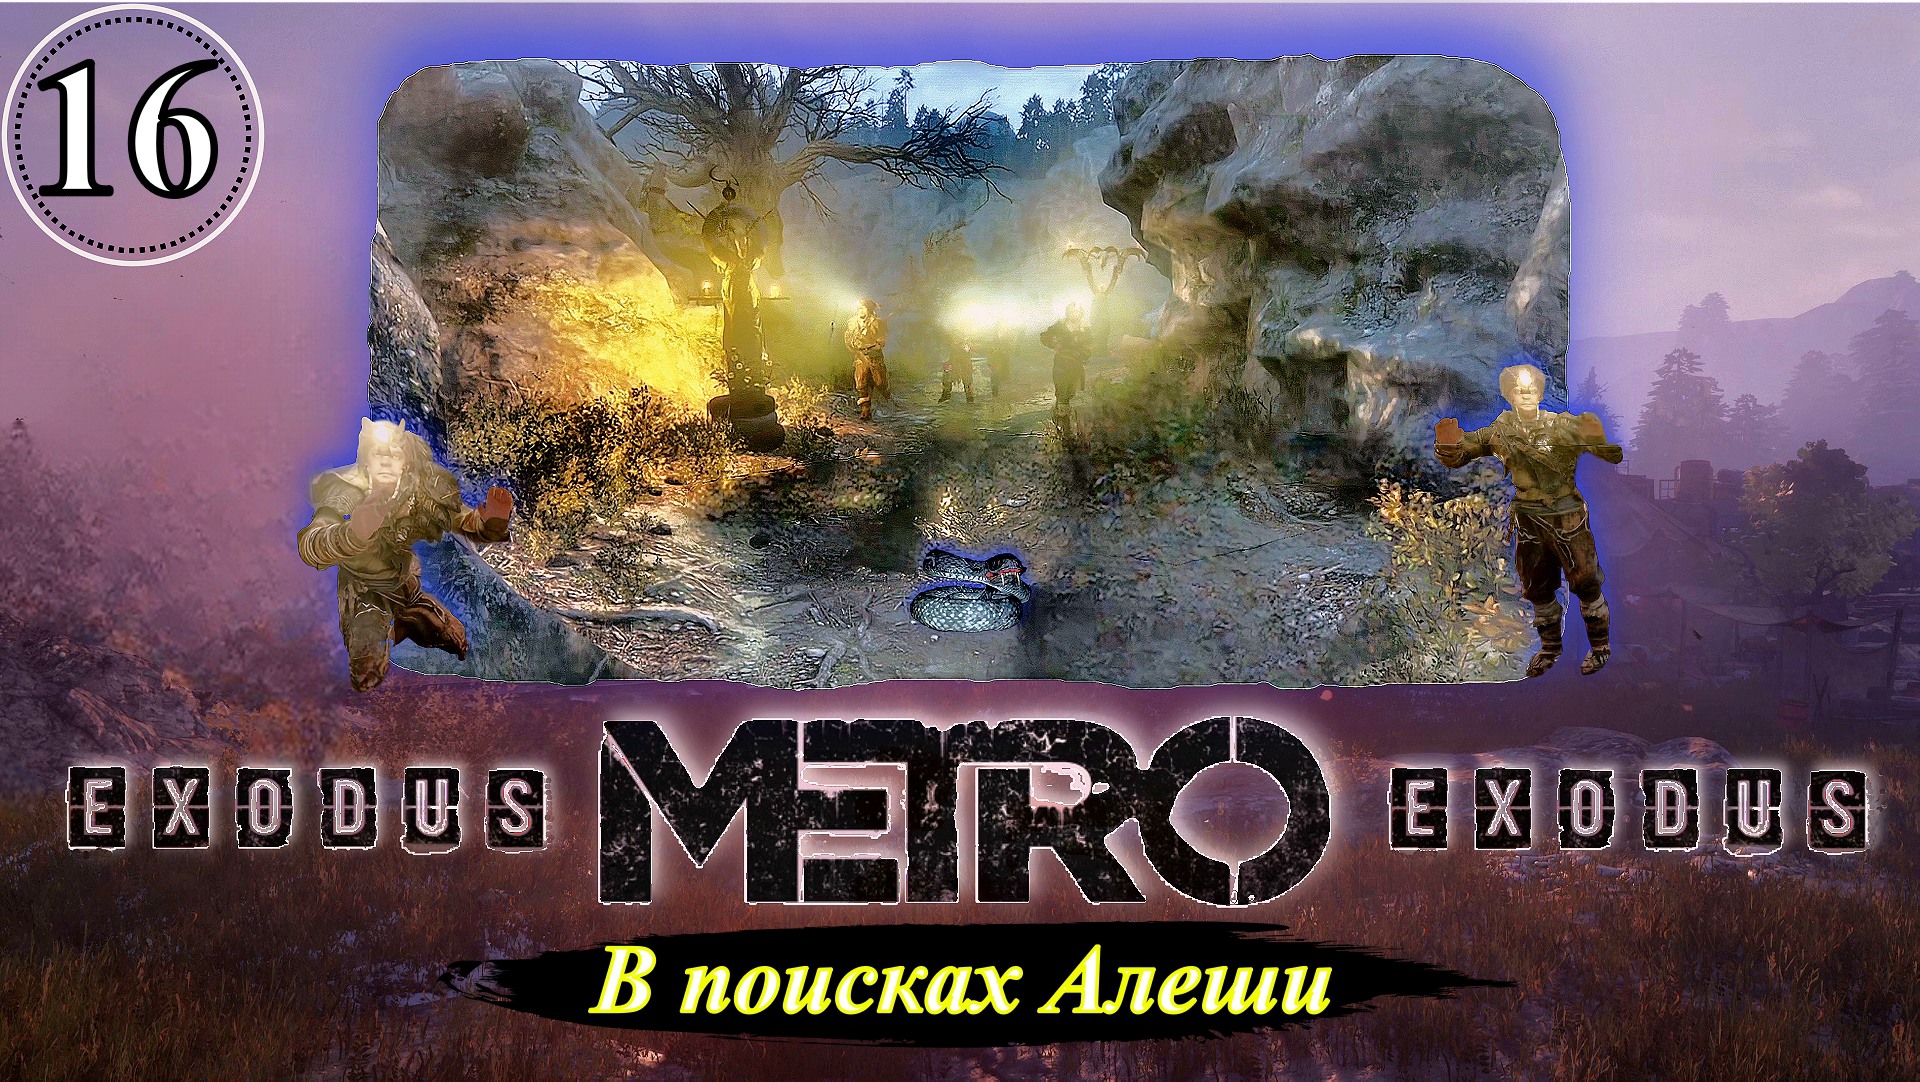 Metro Exodus В поисках Алеши - Прохождение. Часть 16.mp4